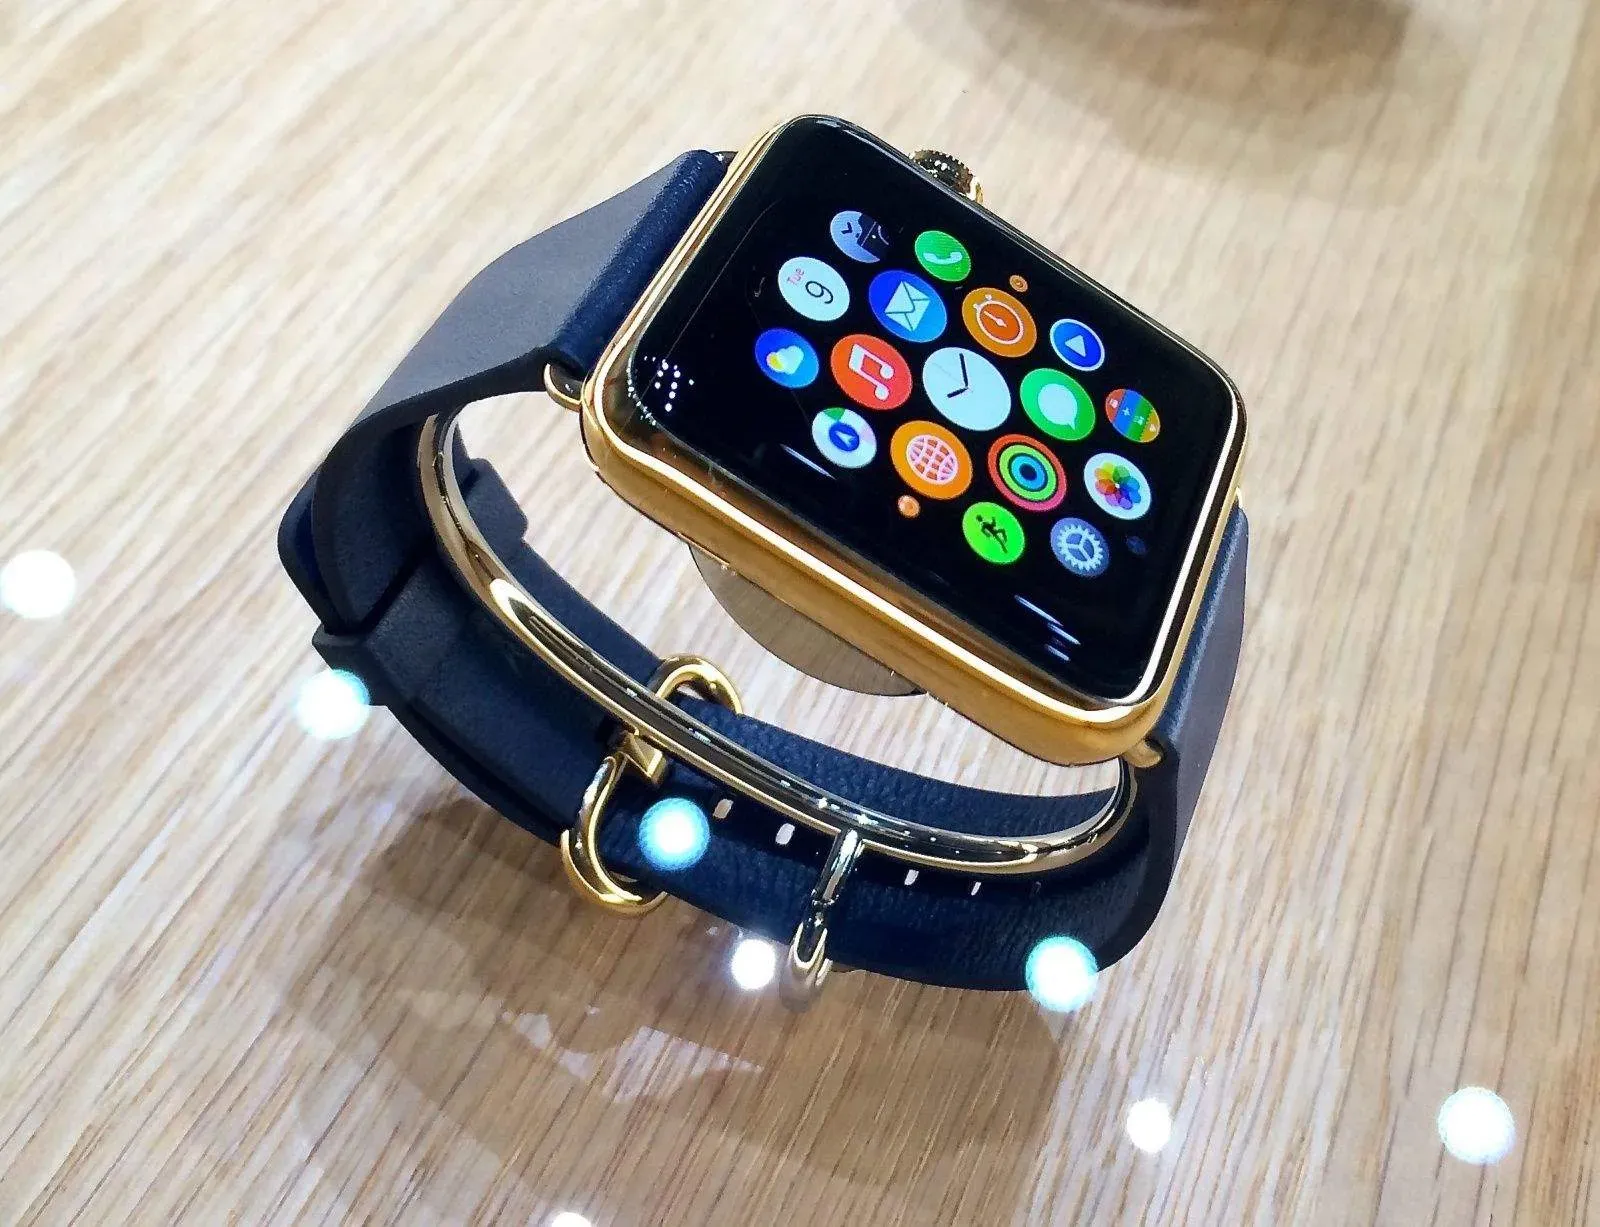 Apple внесла оригинальные Apple Watch 2015 года в список устаревших продуктов